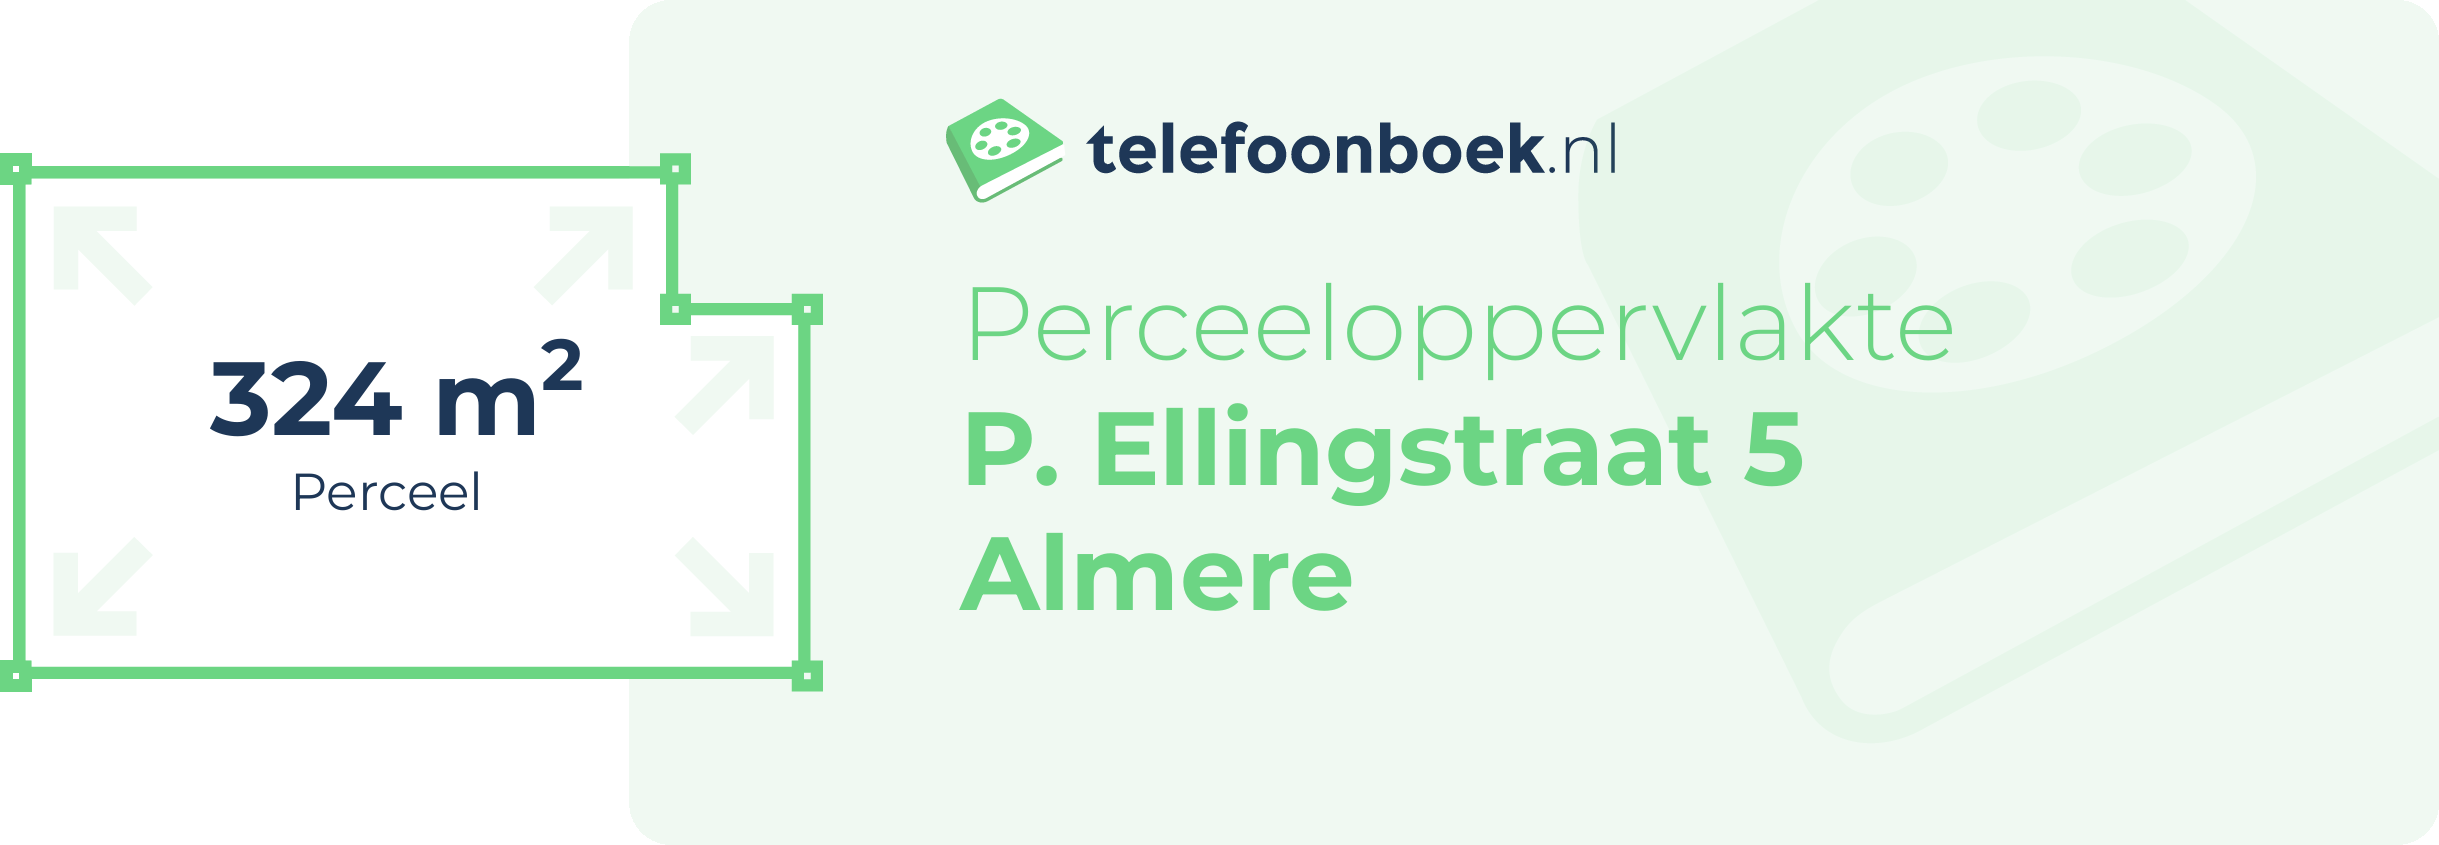 Perceeloppervlakte P. Ellingstraat 5 Almere